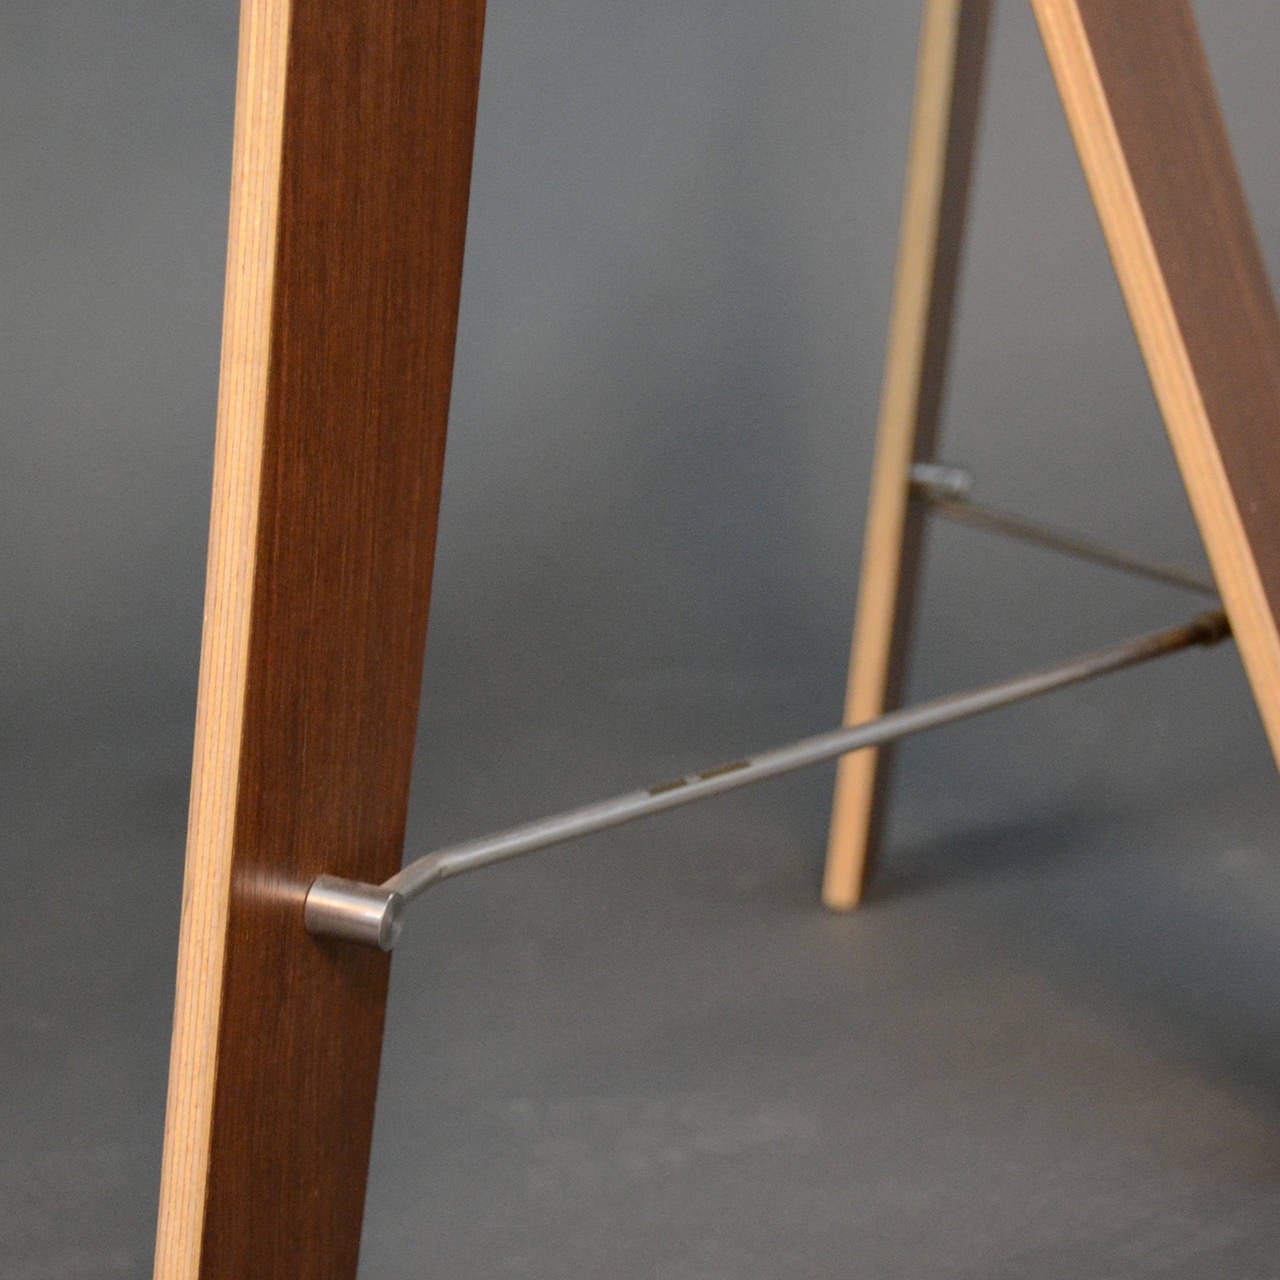 Modern Sidestep Table or Desk by Franck Thorsten